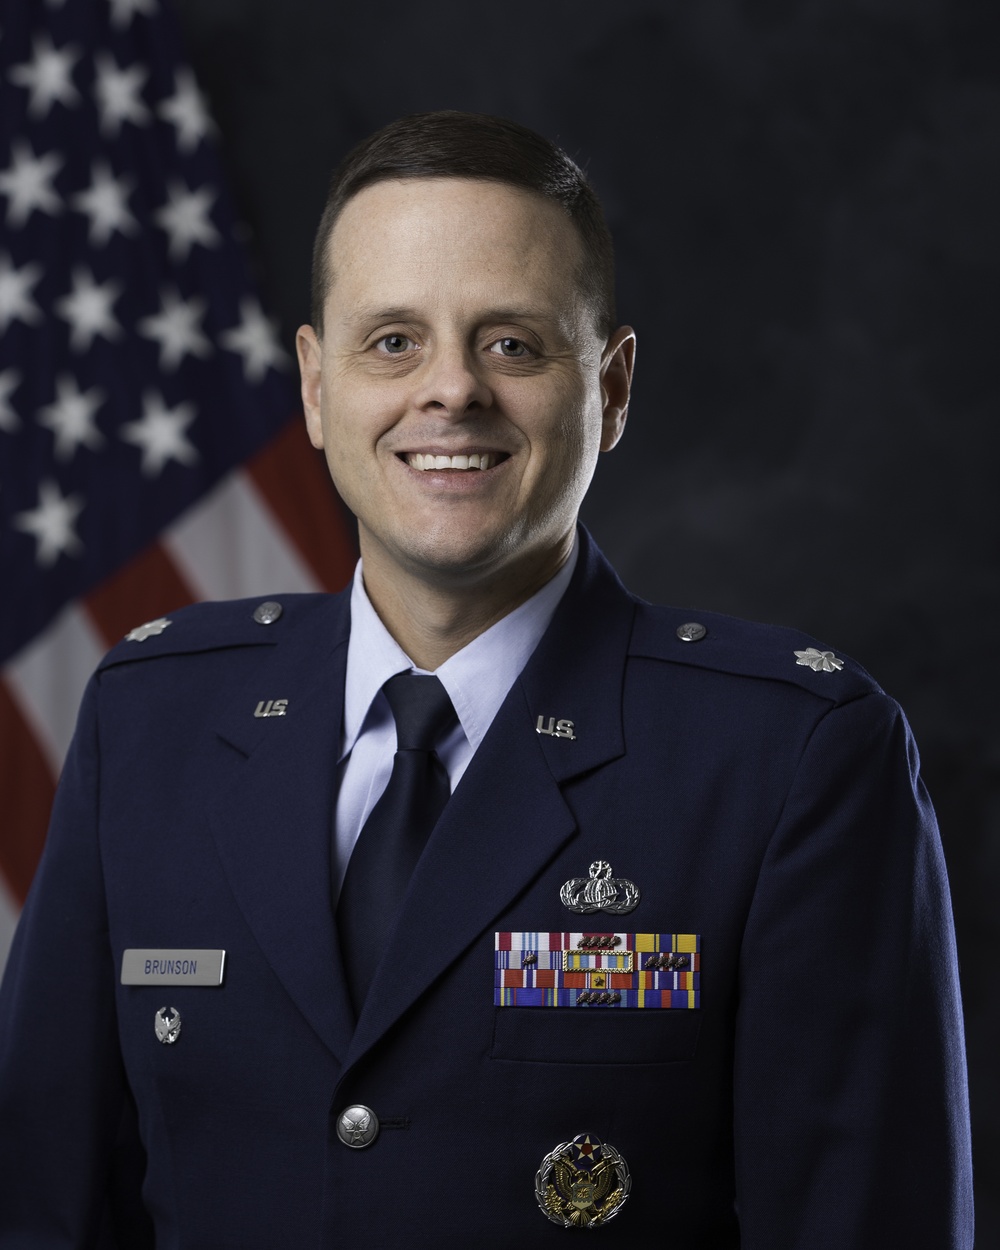 Official portrait of Lt. Col. Corey Brunson, US Air Force